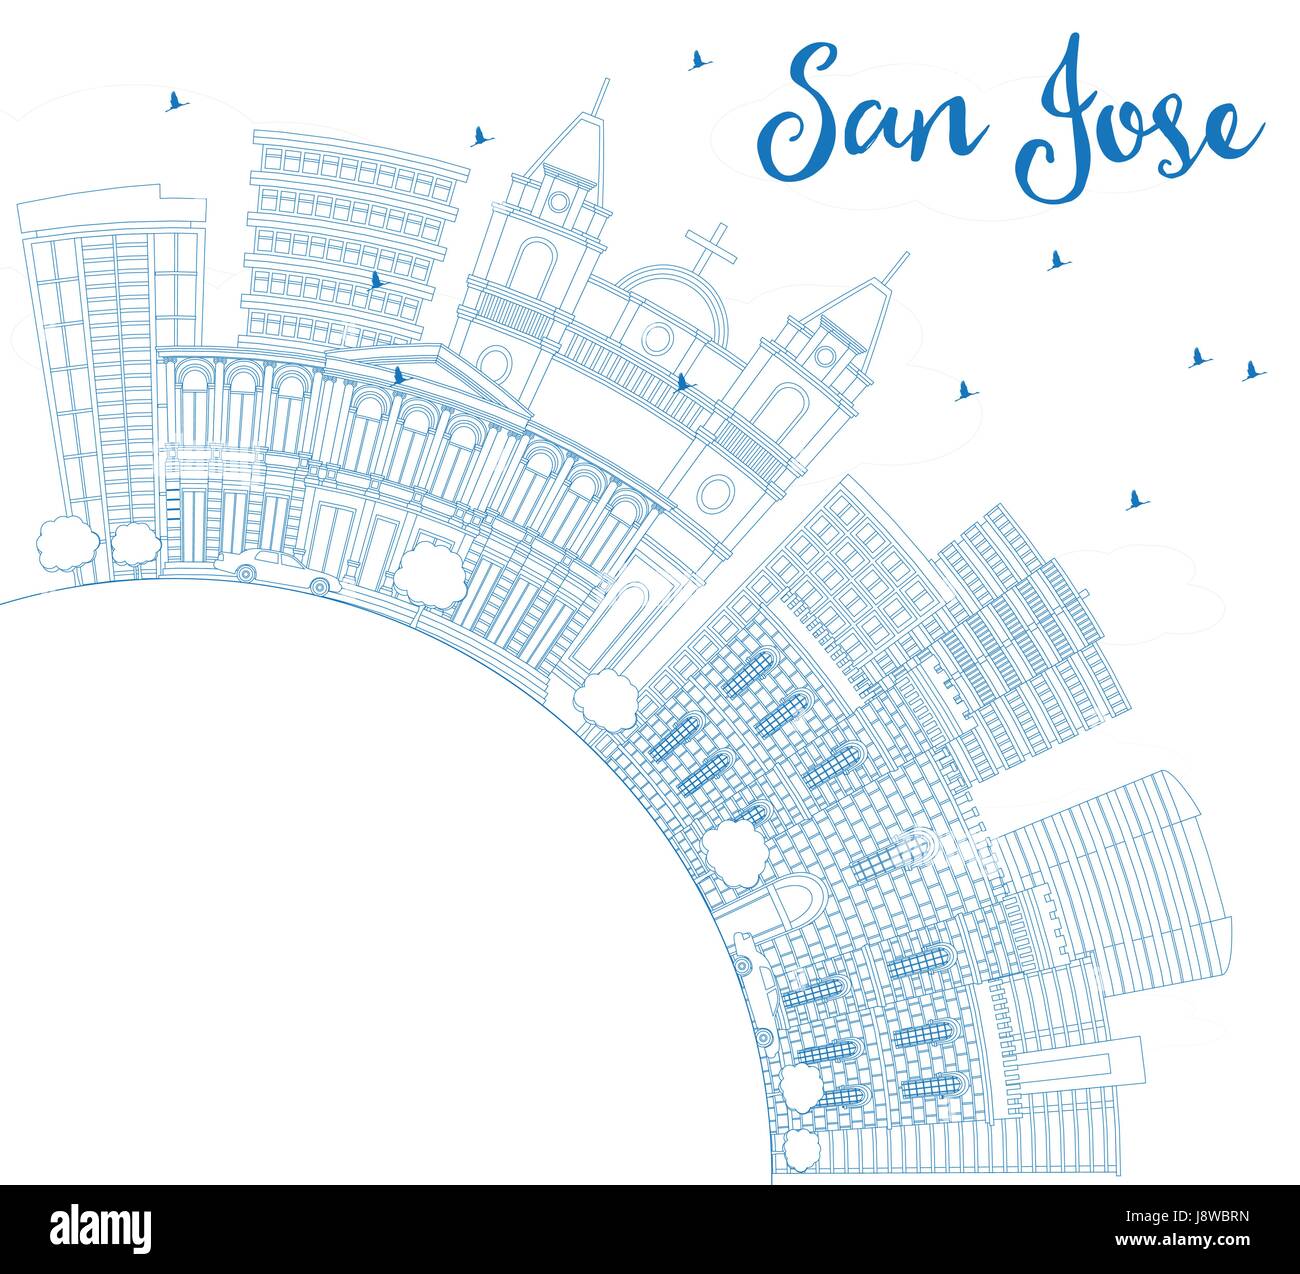 Profilo San Jose Skyline con edifici blu e copia di spazio. Illustrazione Vettoriale. Viaggi di affari e di turismo con il concetto di architettura moderna. Illustrazione Vettoriale